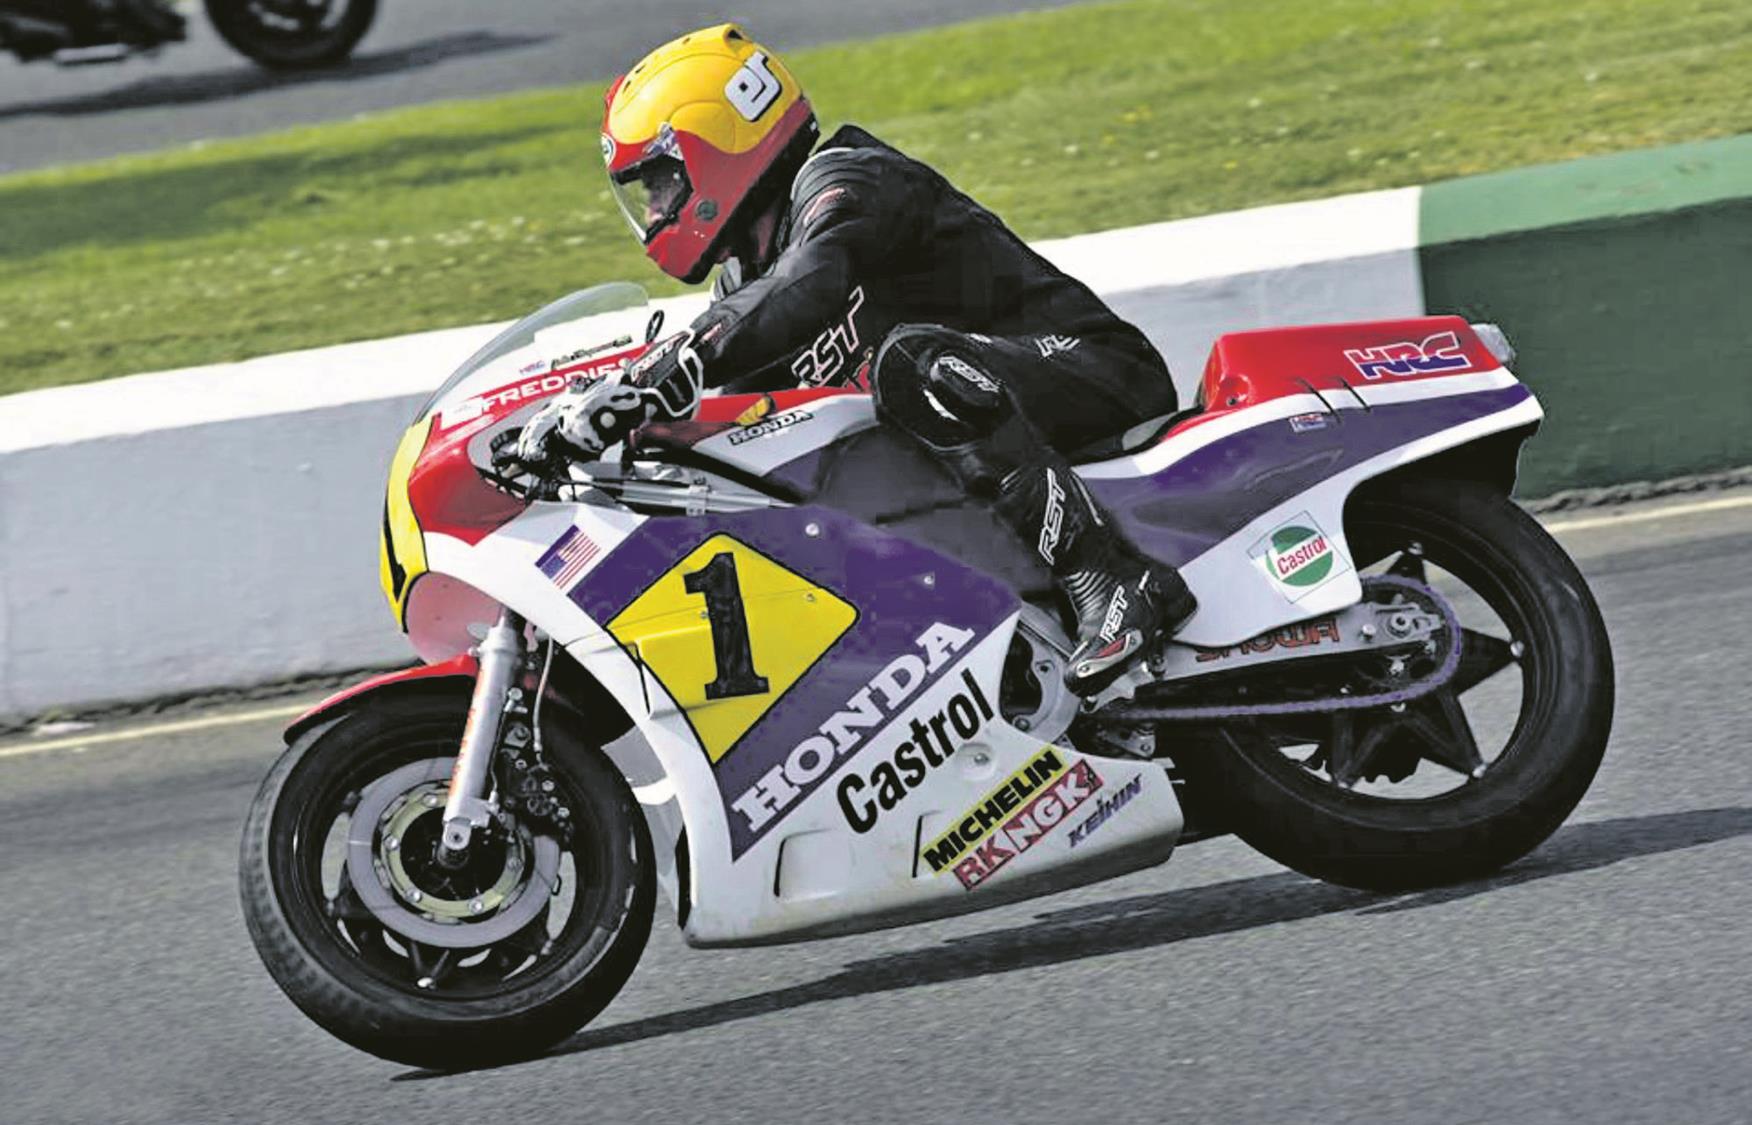 eddie roberts motorcycle racer